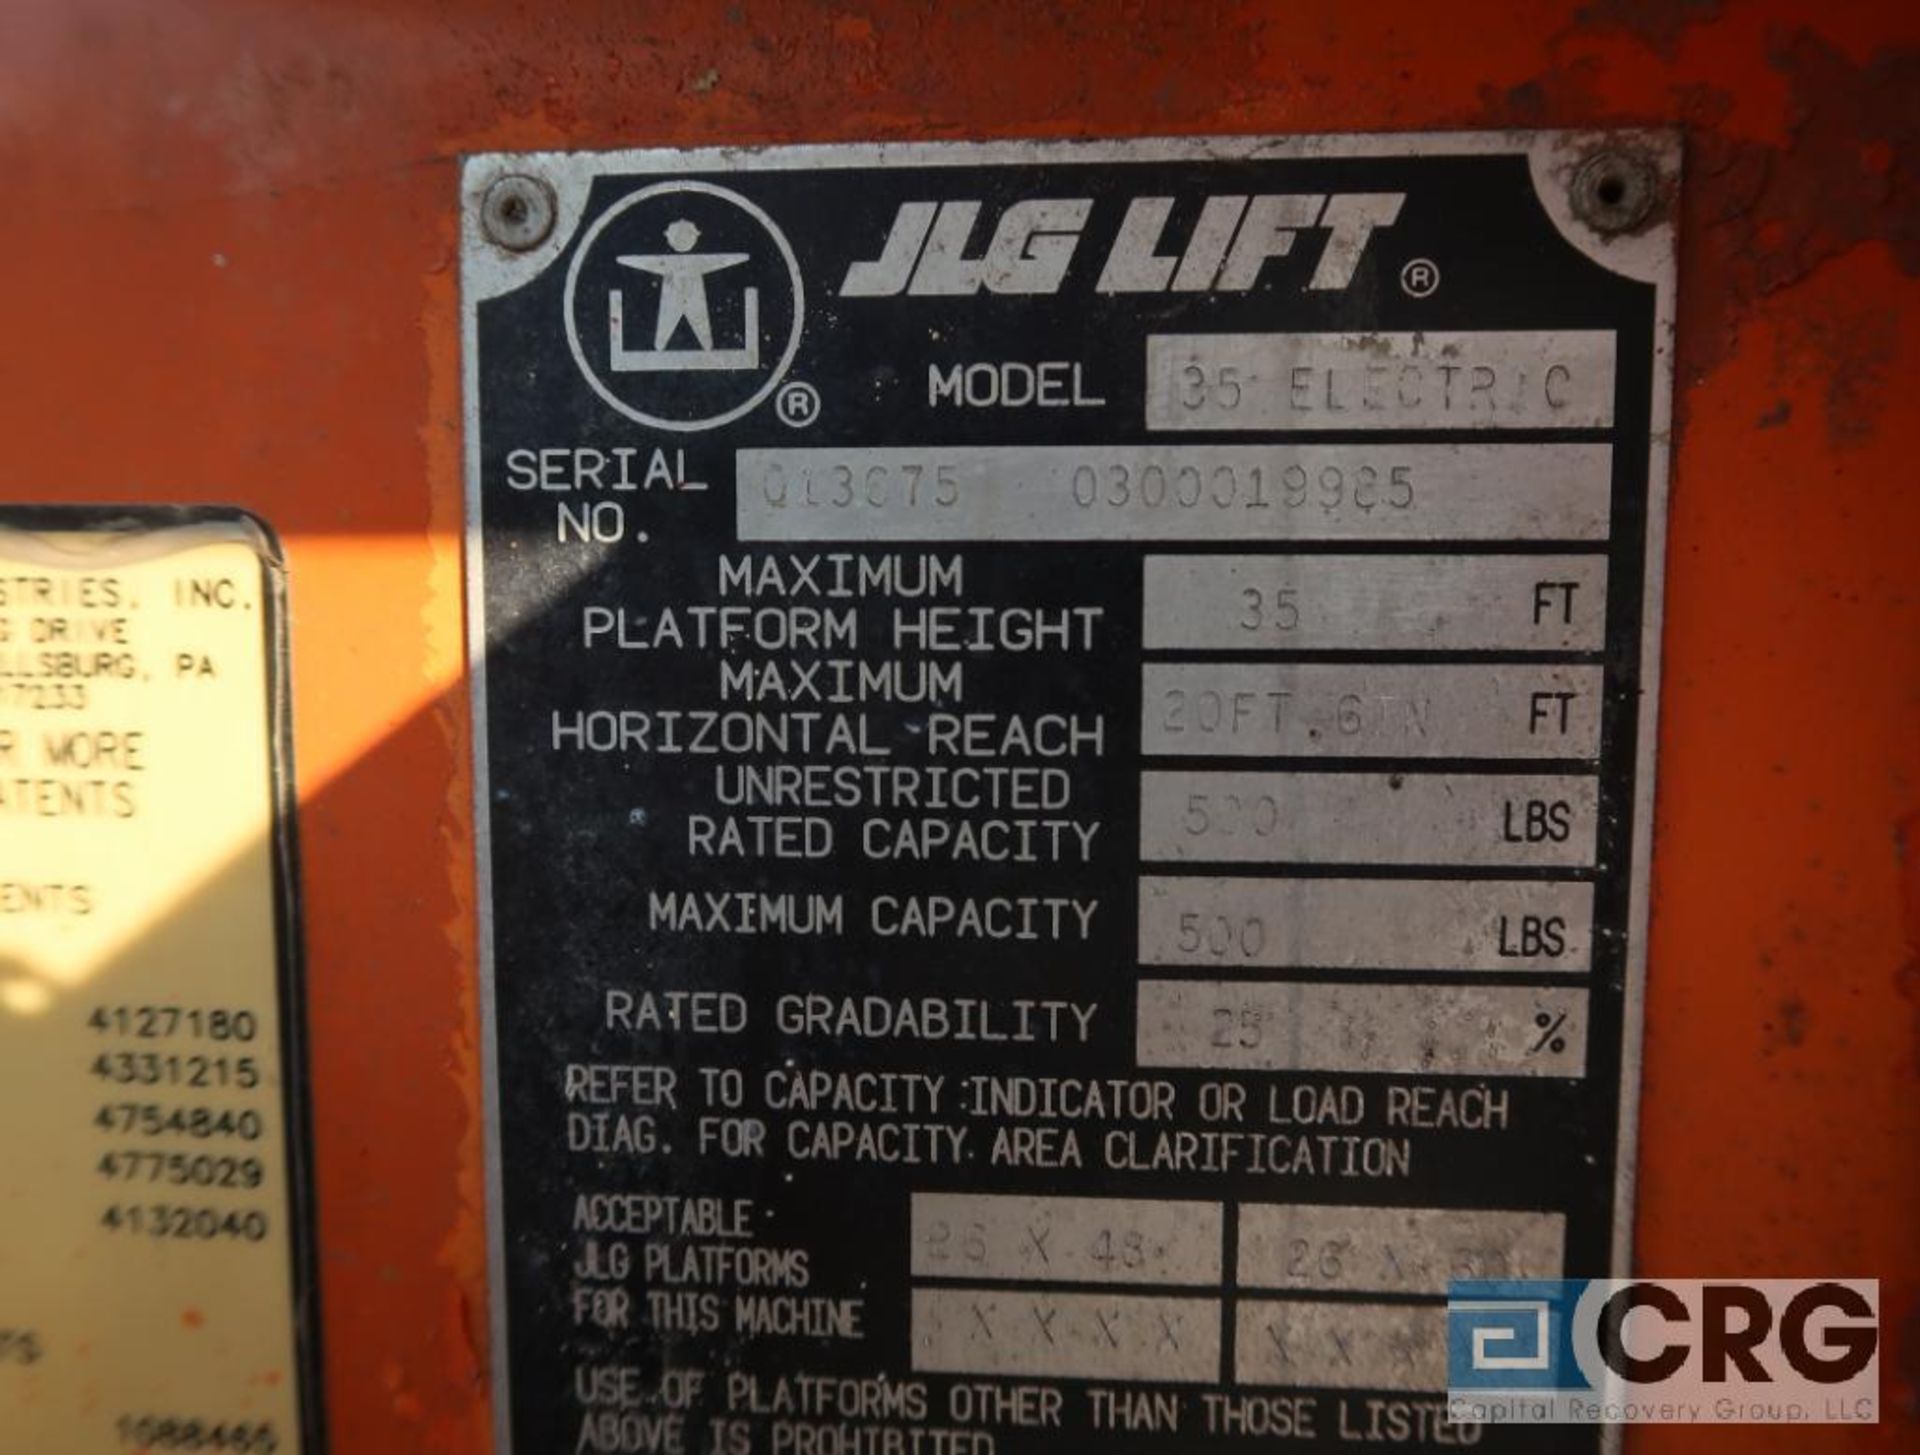 1994 JLG 35 Electric manlift, 500 lb. cap., platform height 35 ft., hort. length 20 ft., 48 volt, - Image 3 of 5